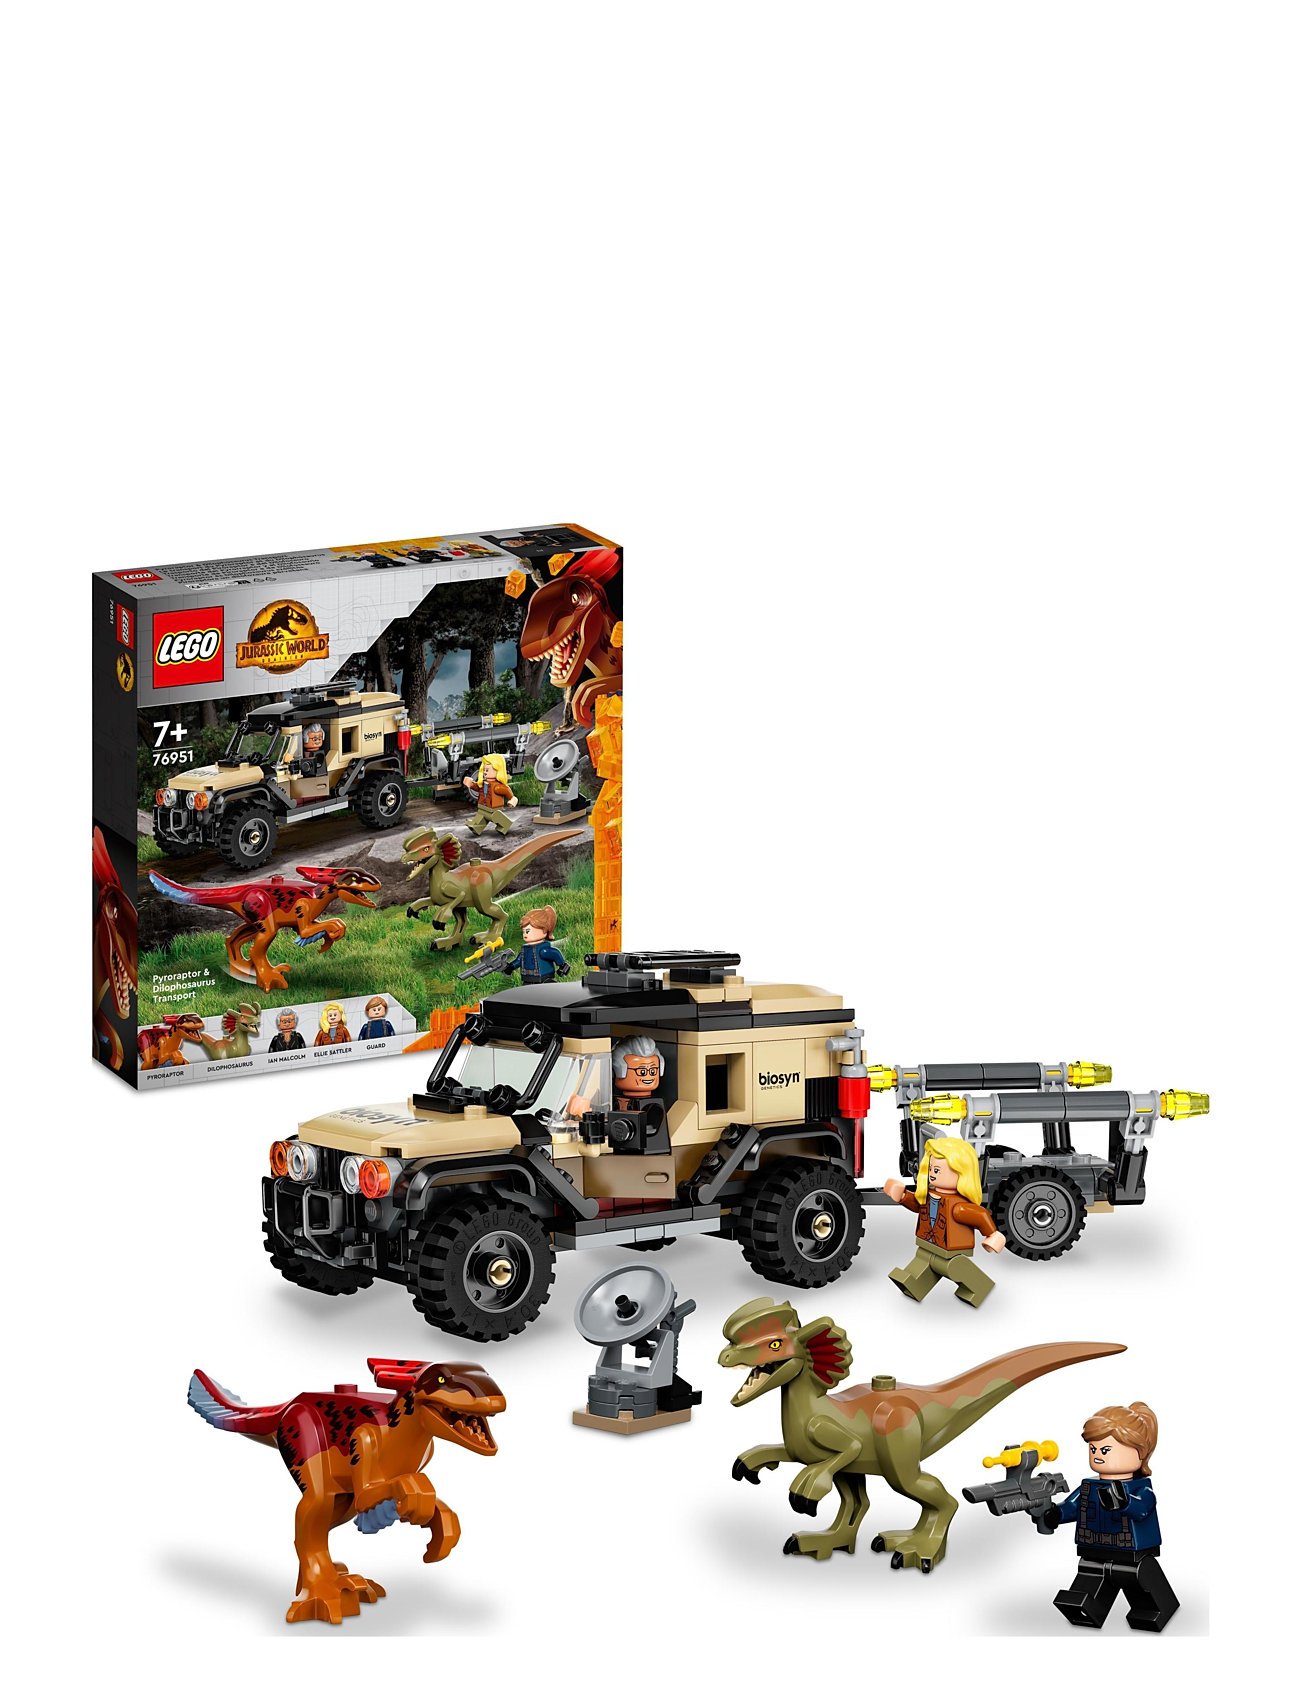 LEGO "Pyroraptor & Dilophosaurus Transport Toys Lego jurassic World Multi/patterned LEGO"